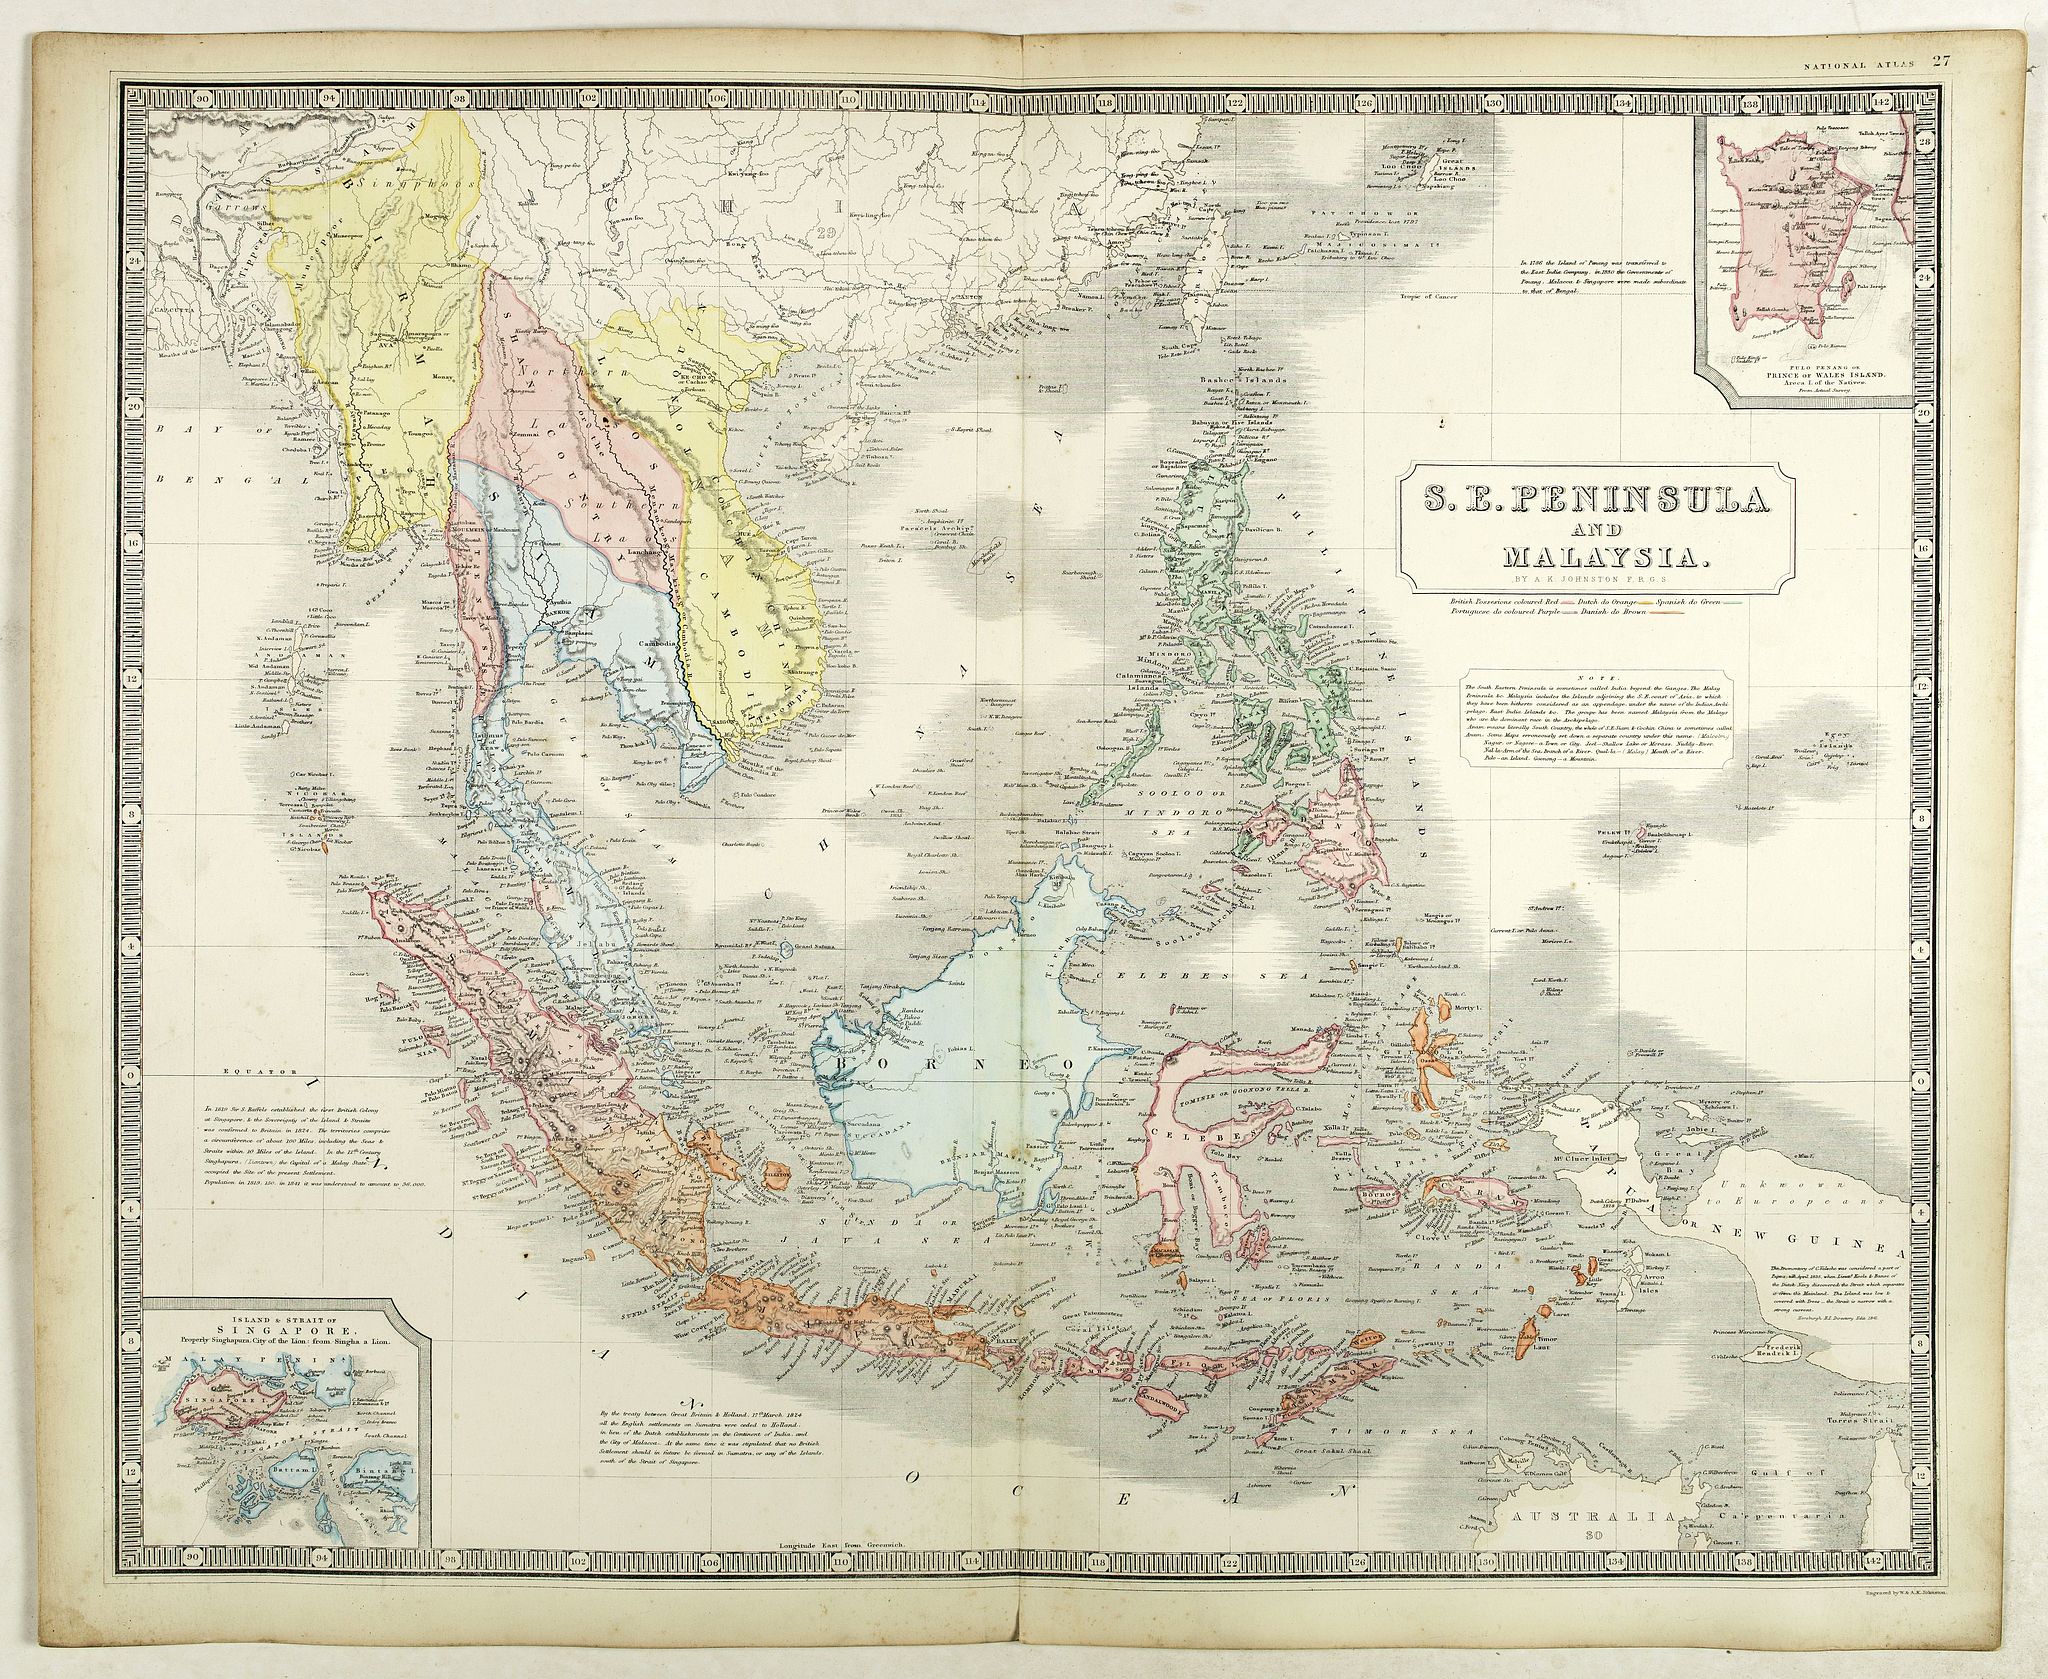 S.E. Peninsula and Malaysia.